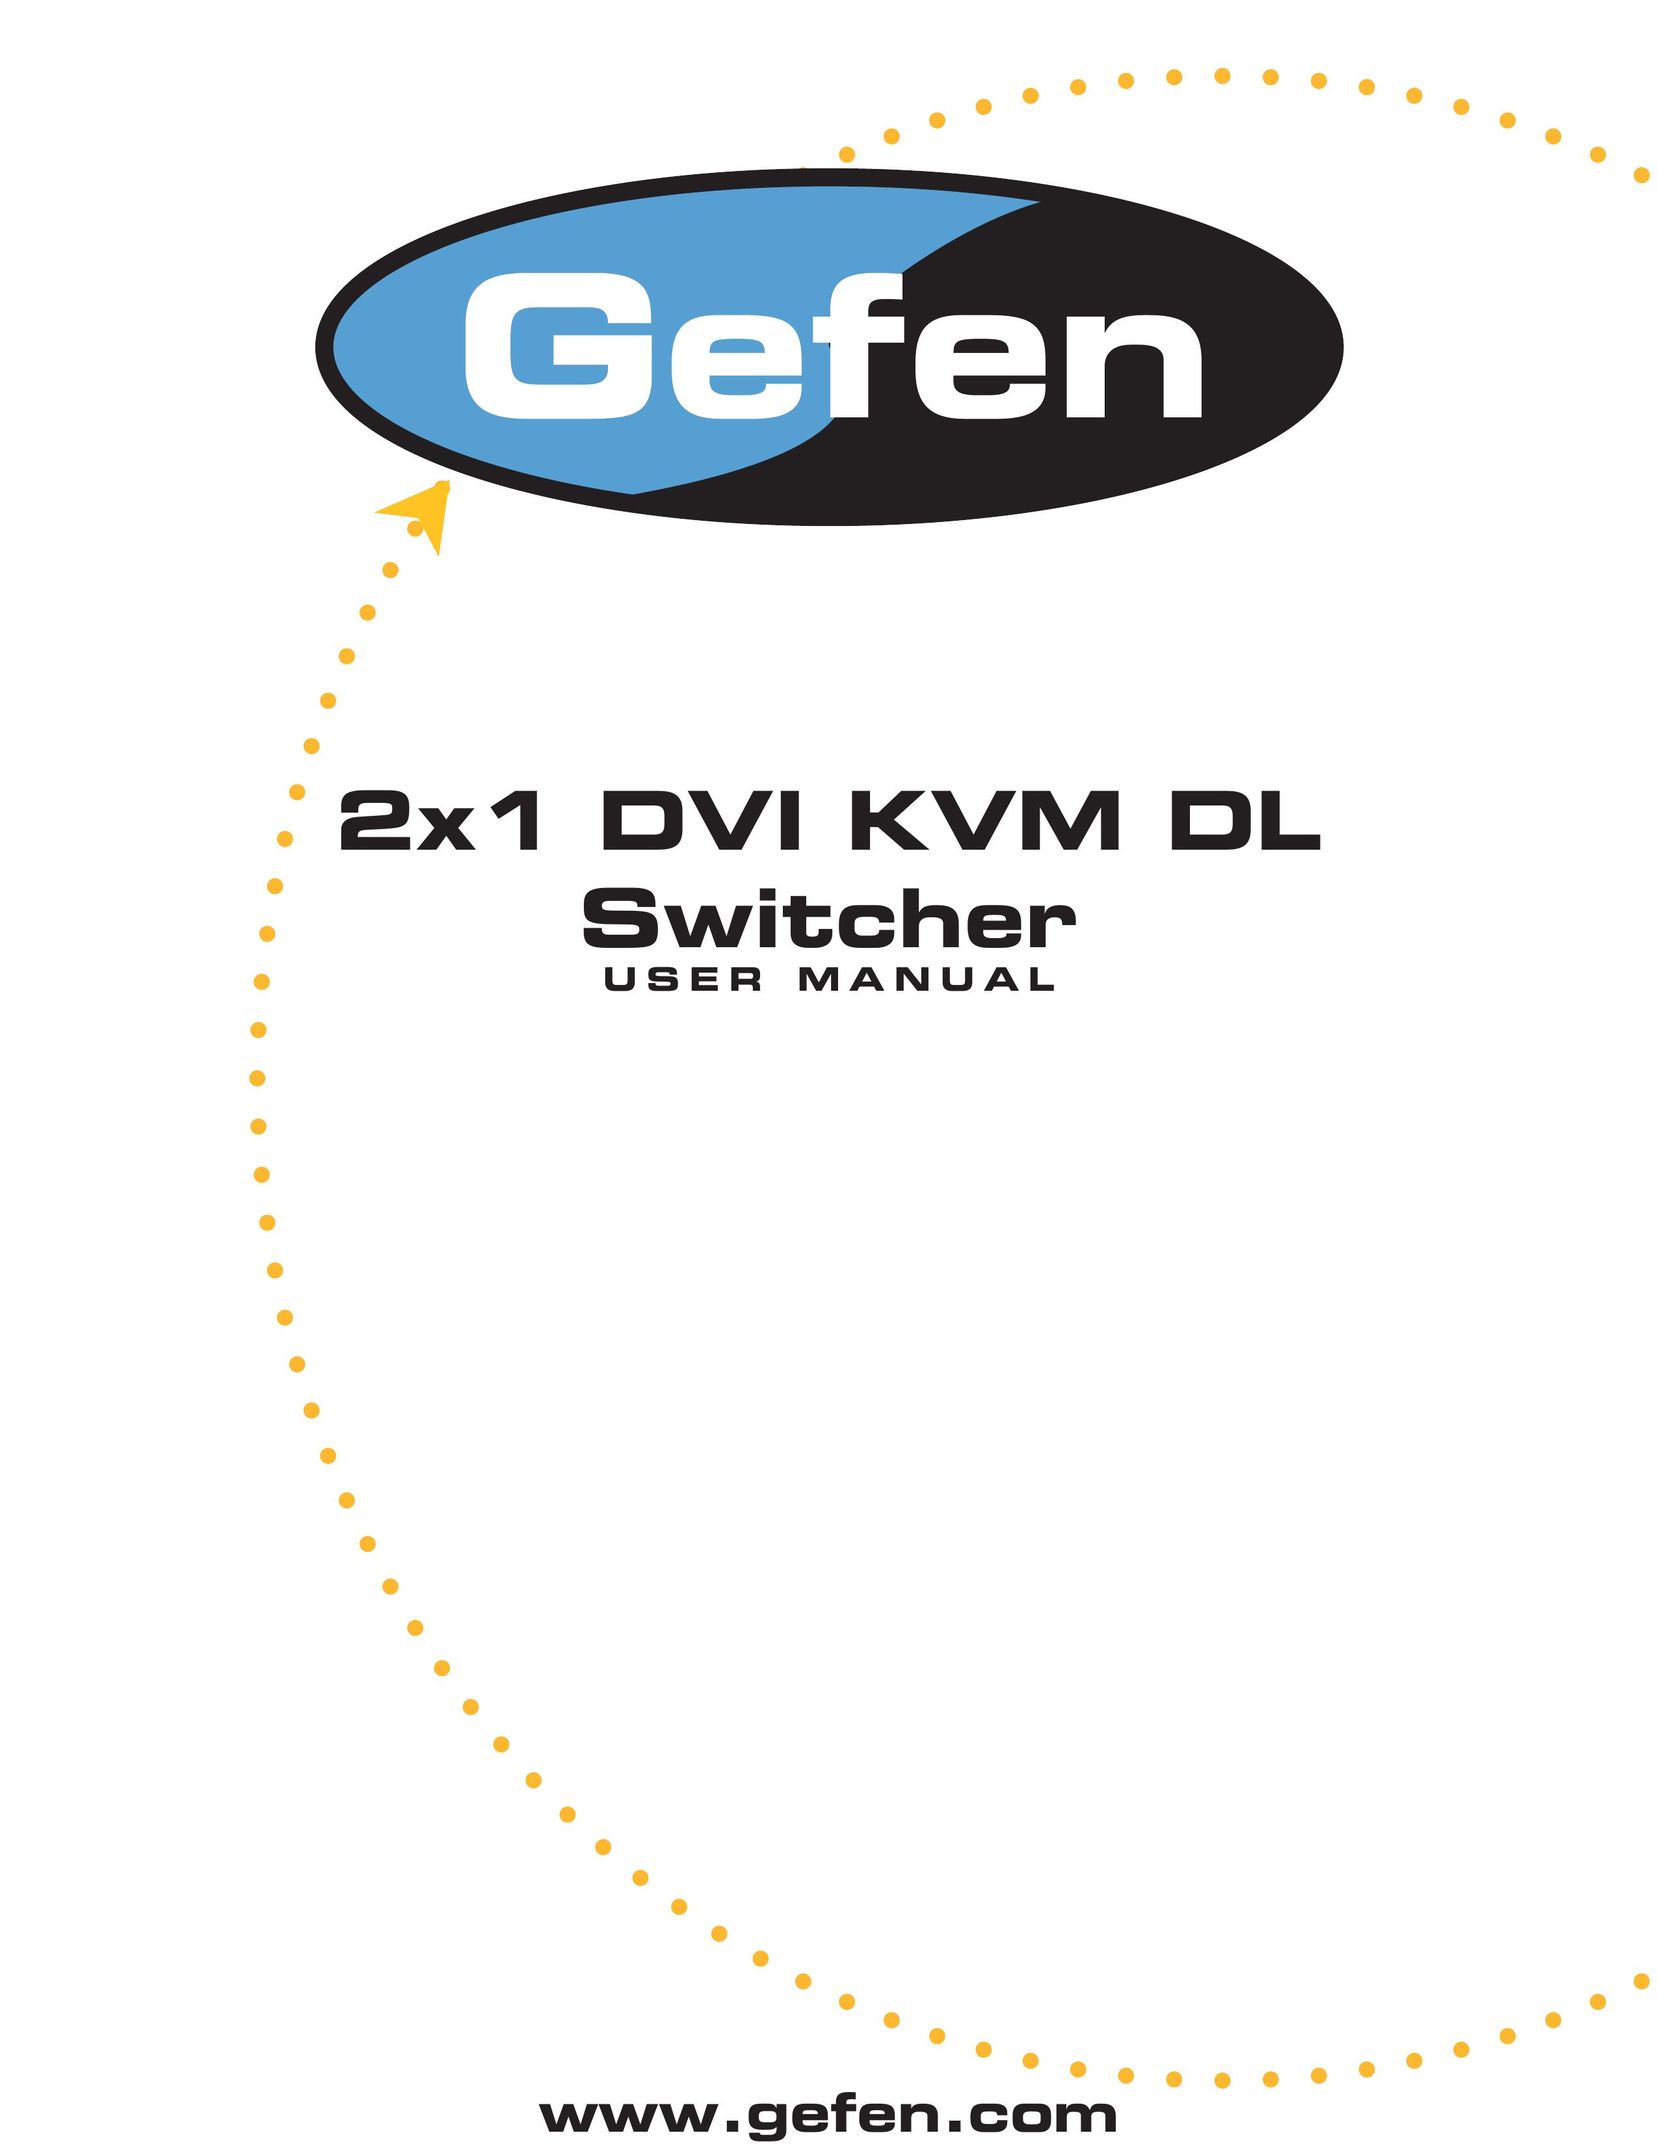 Gefen DL Switch User Manual